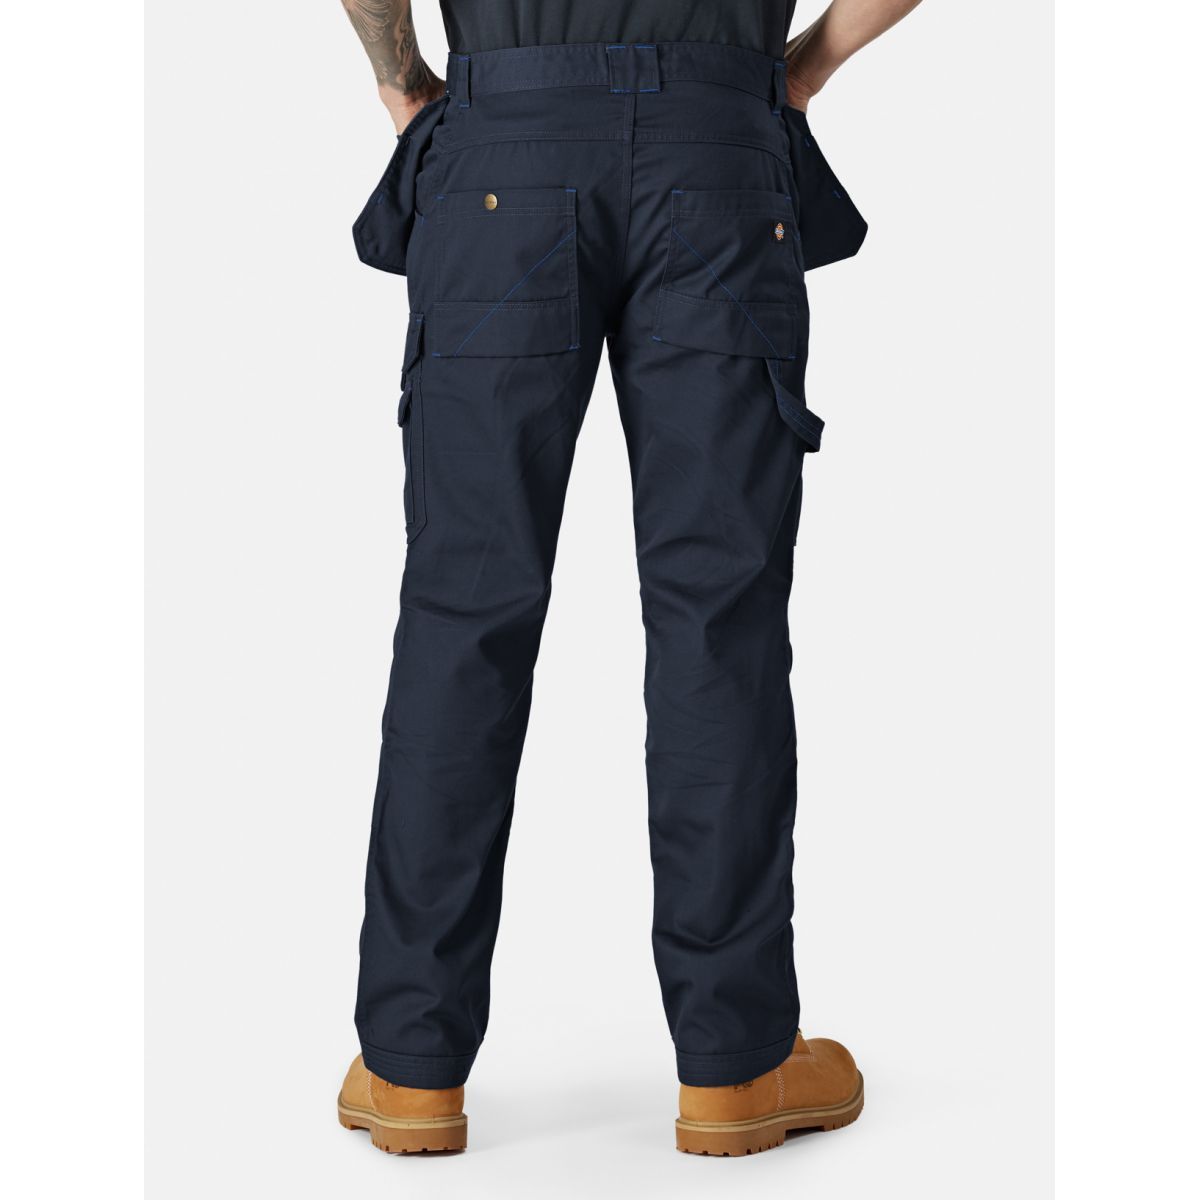 Pantalon Redhawk Pro Bleu marine - Dickies - Taille 52 1